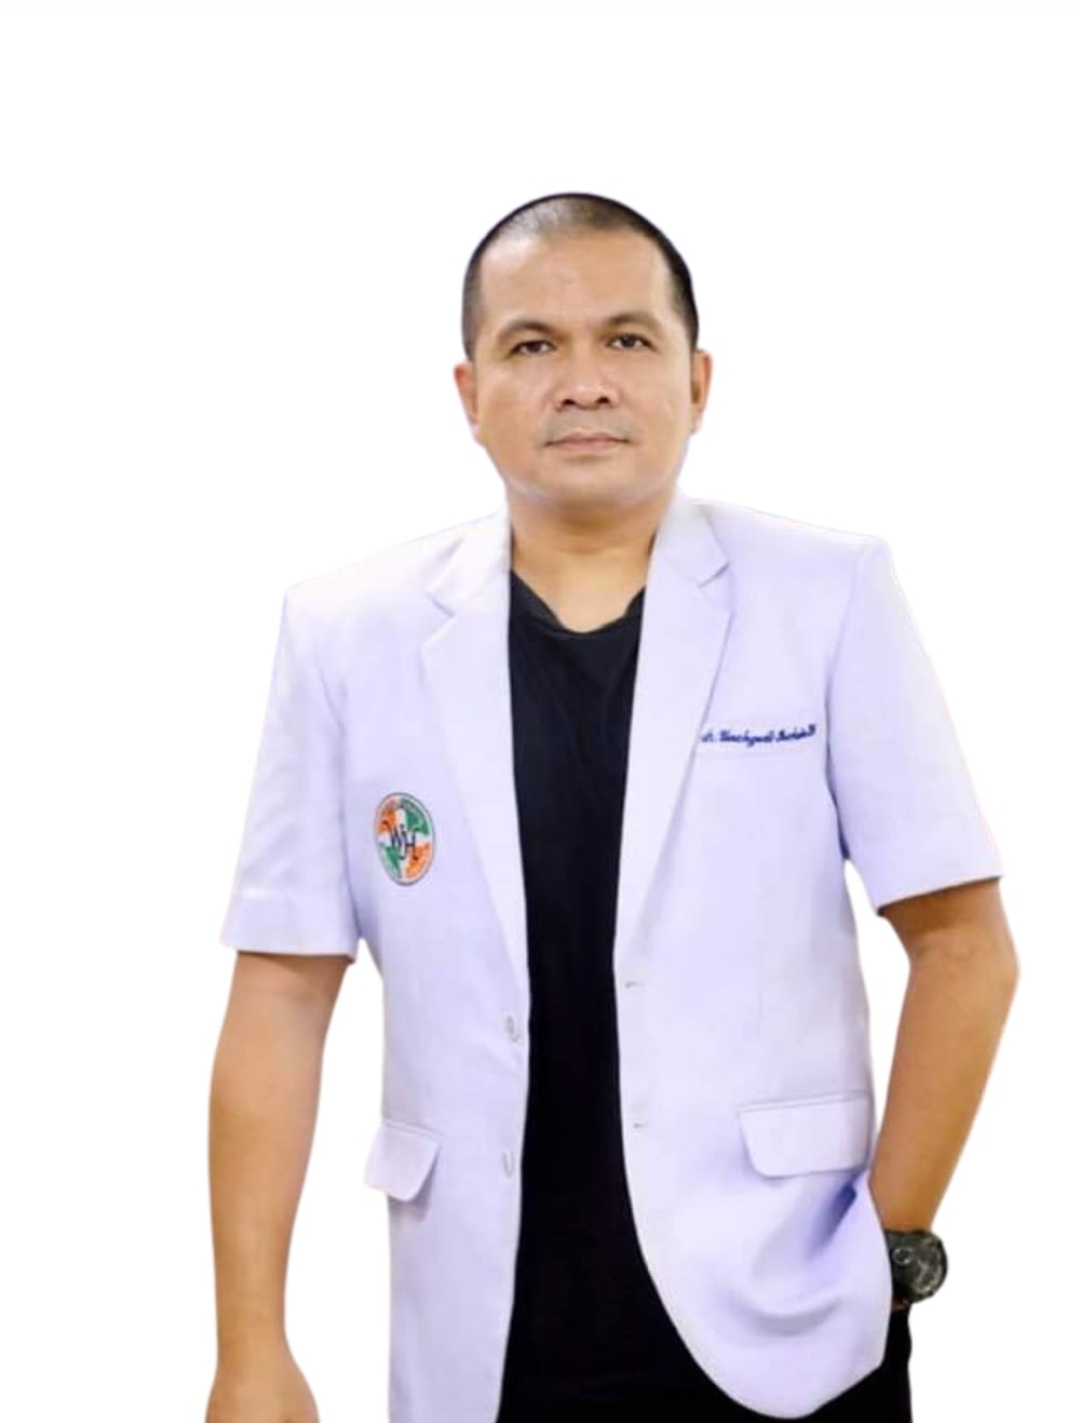 Jelang Wukuf di Arafah, Dokter Yudi Berpesan Jemaah Terus Jaga Kesehatan